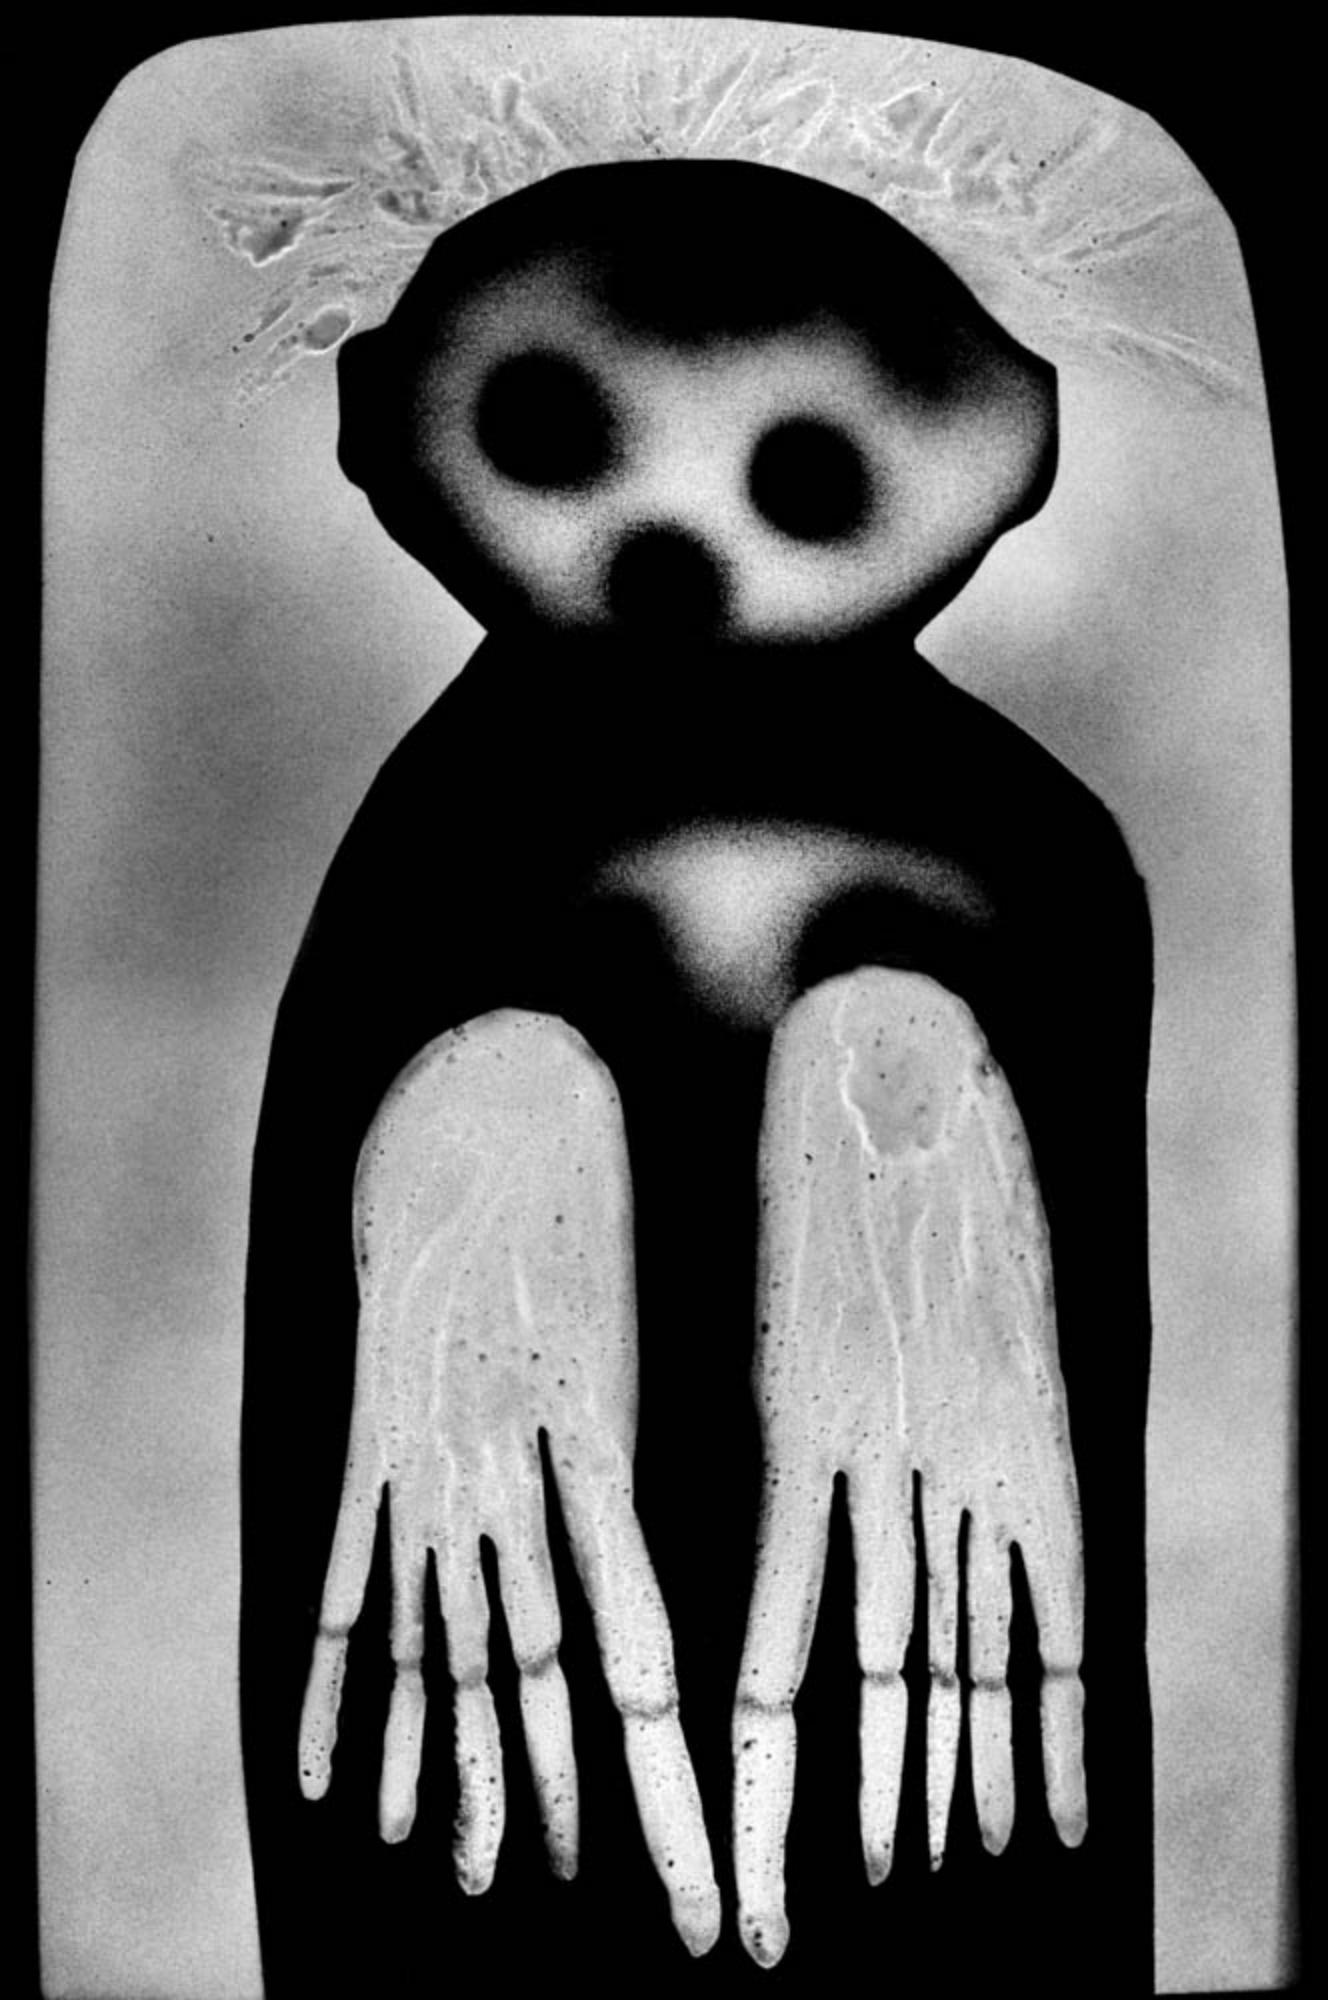 Roger Ballen
Waif, de la série "The Theatre of Apparitions", 2012
Caisson lumineux Texflex simple face, revêtement époxy noir ferro
Caisson lumineux 100 x 86 x 9 cm (39 3/8 x 33 7/8 x 3 1/2 in.)
Édition de 3 (#1/3)

Tous les caissons lumineux